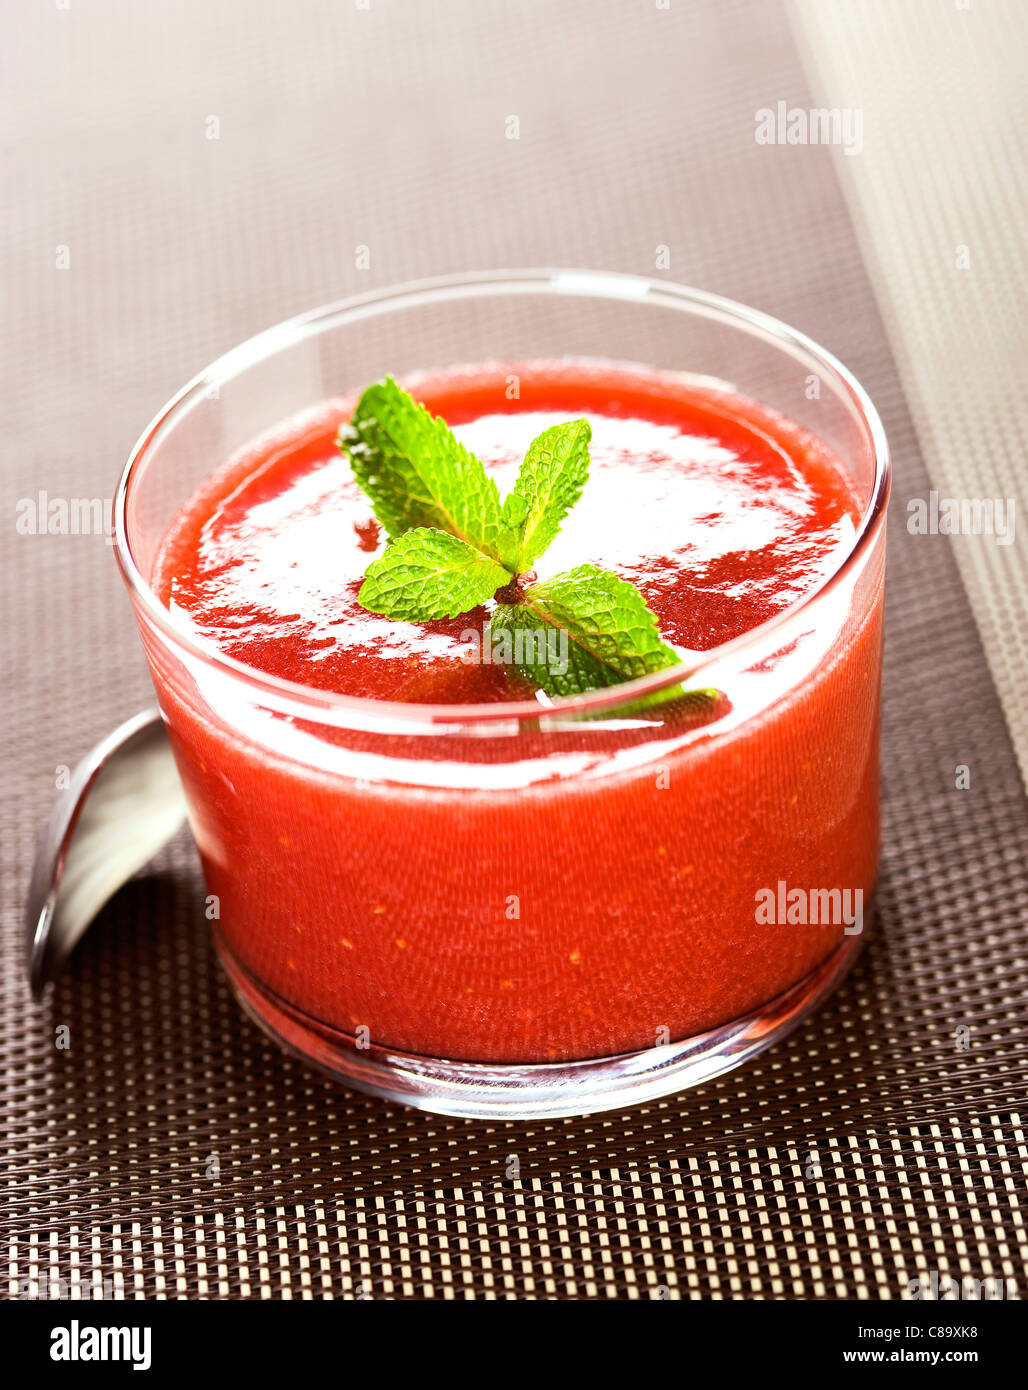 Soupe de fraises à la menthe fraîche Banque D'Images